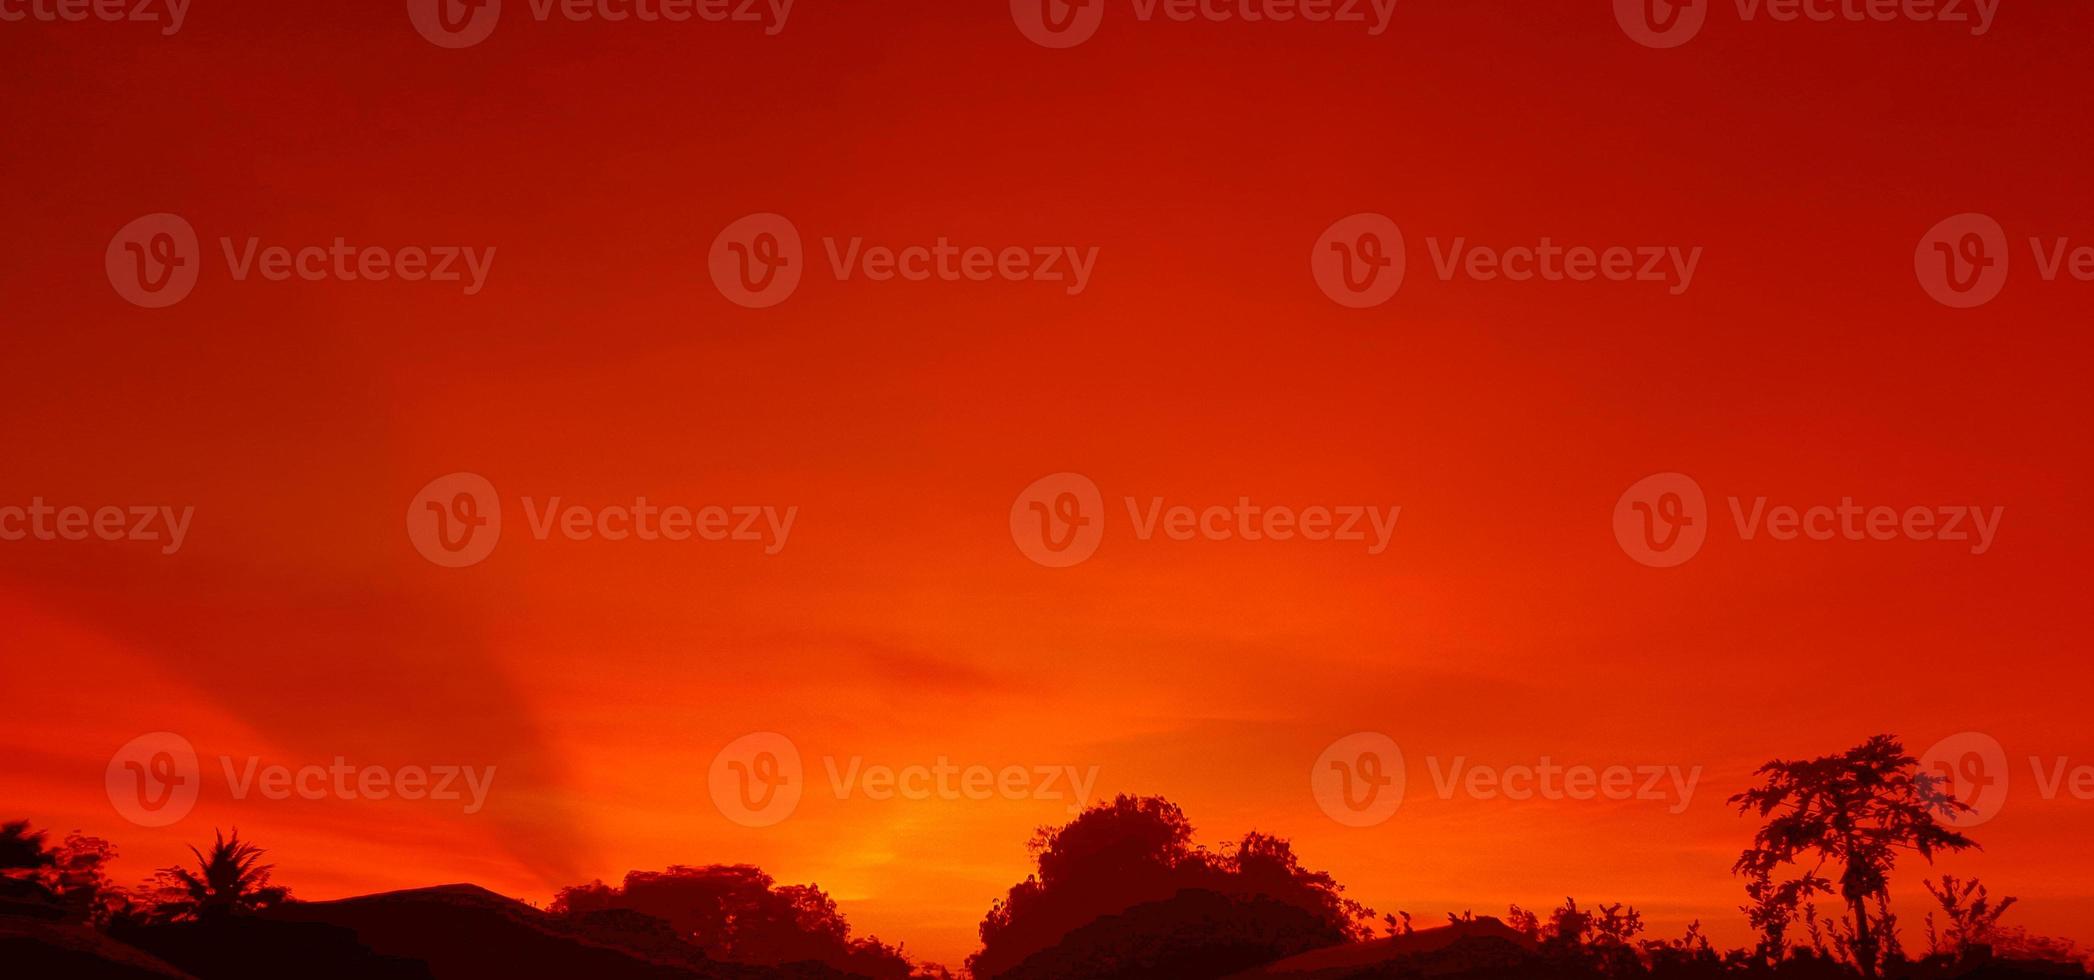 sonnenuntergang, orange himmel busch baum silhouette schwarzer hintergrund natur foto